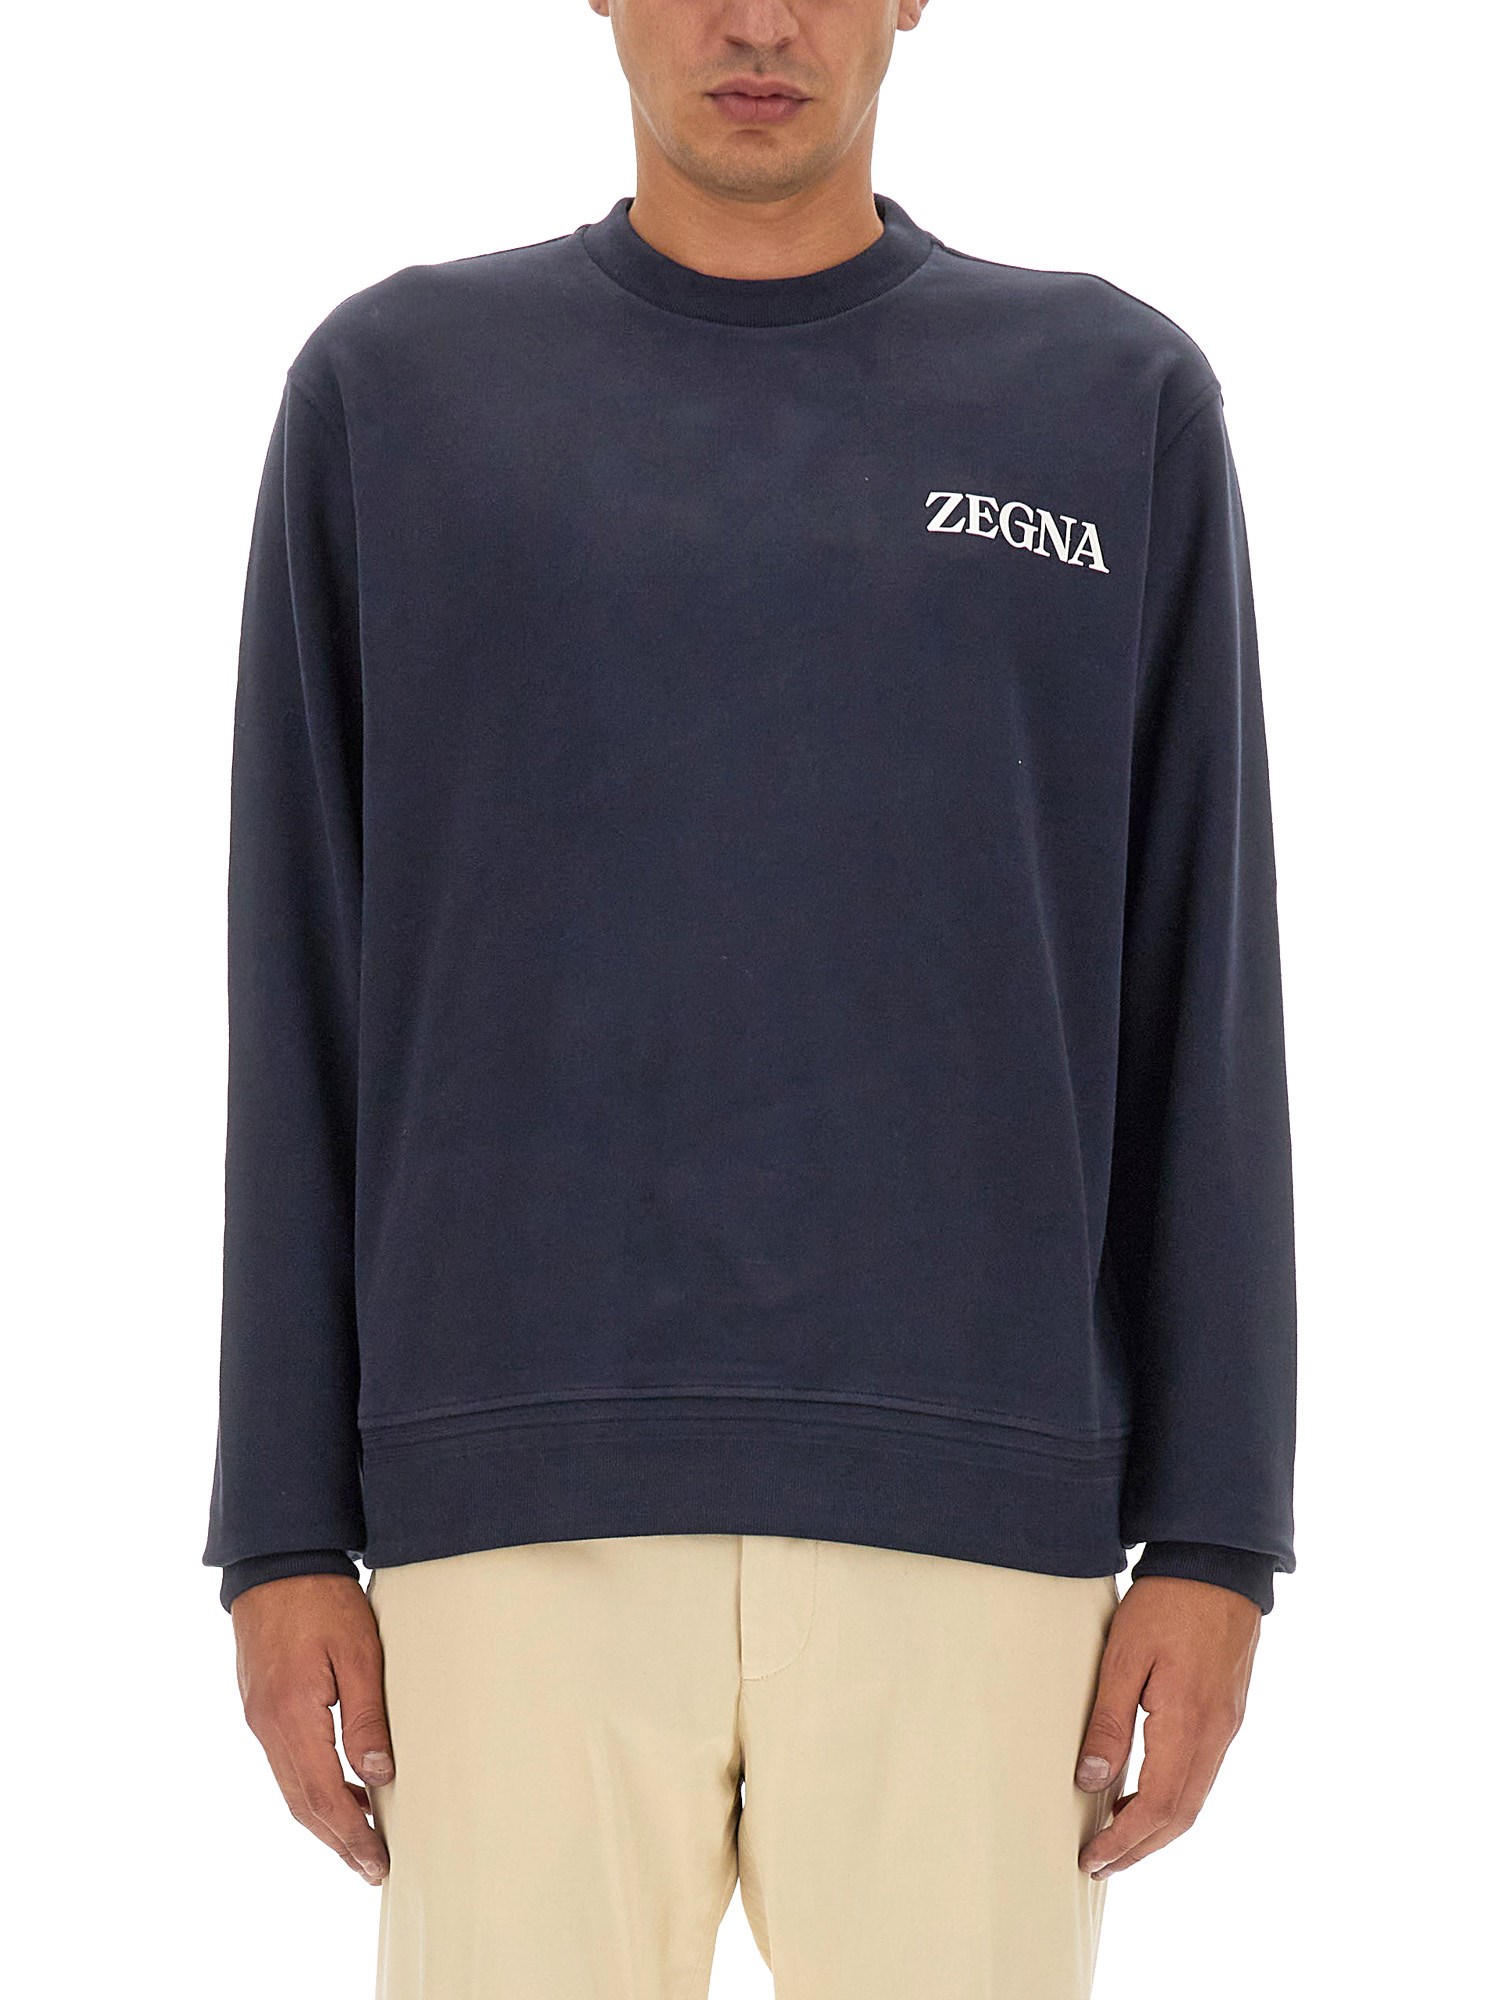 zegna sweatshirt with logo